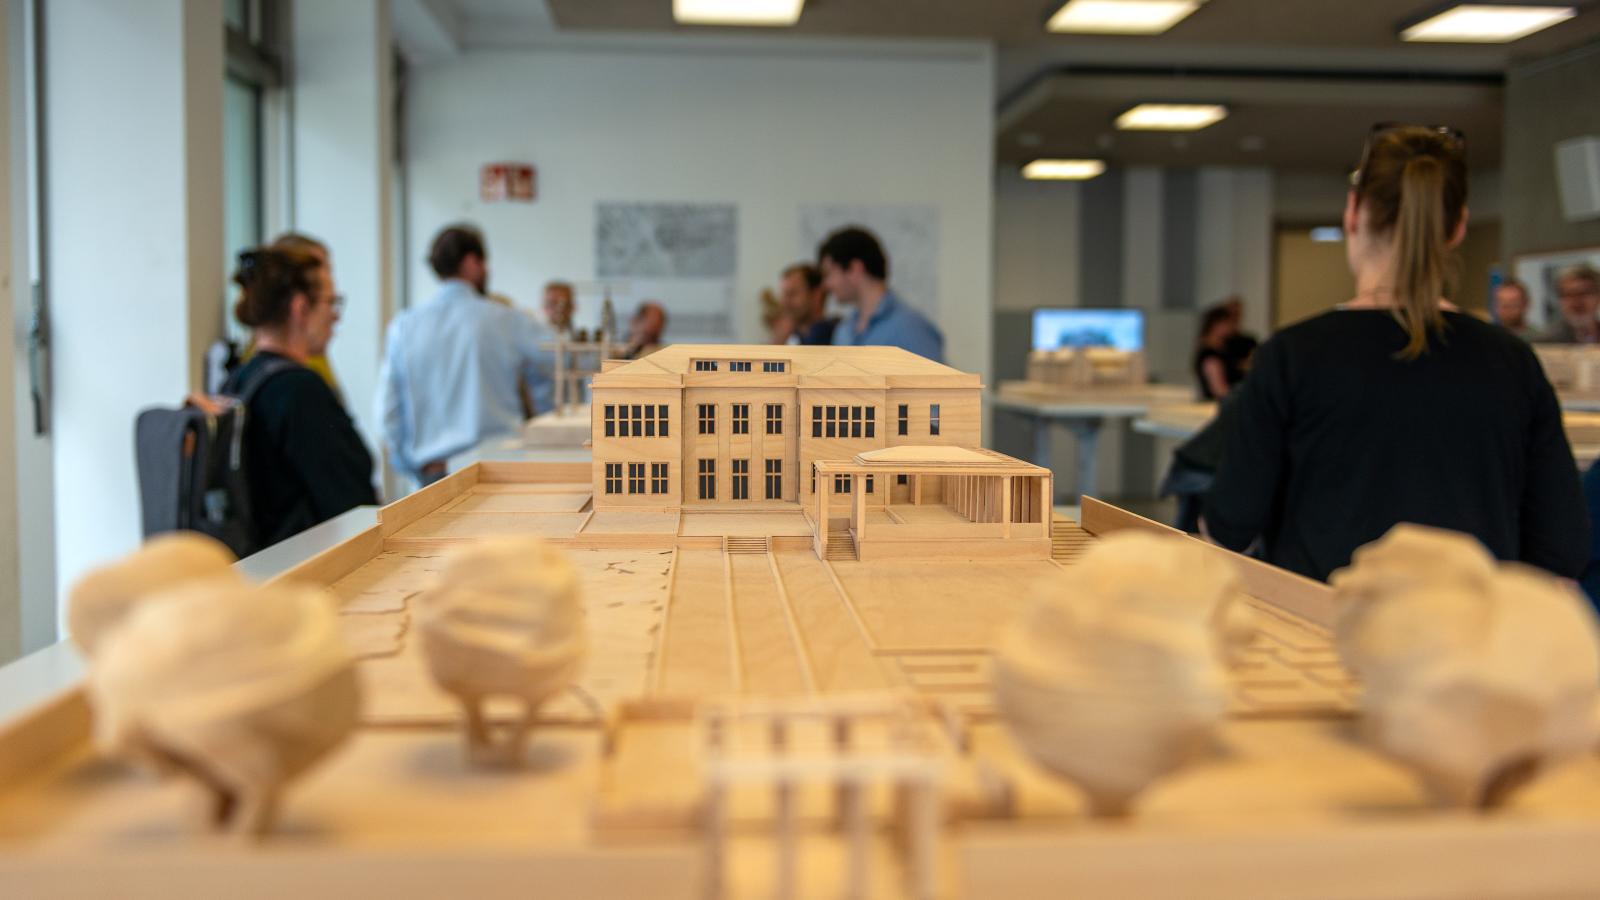 Modell aus dem Bereich Architektur und Städtebau